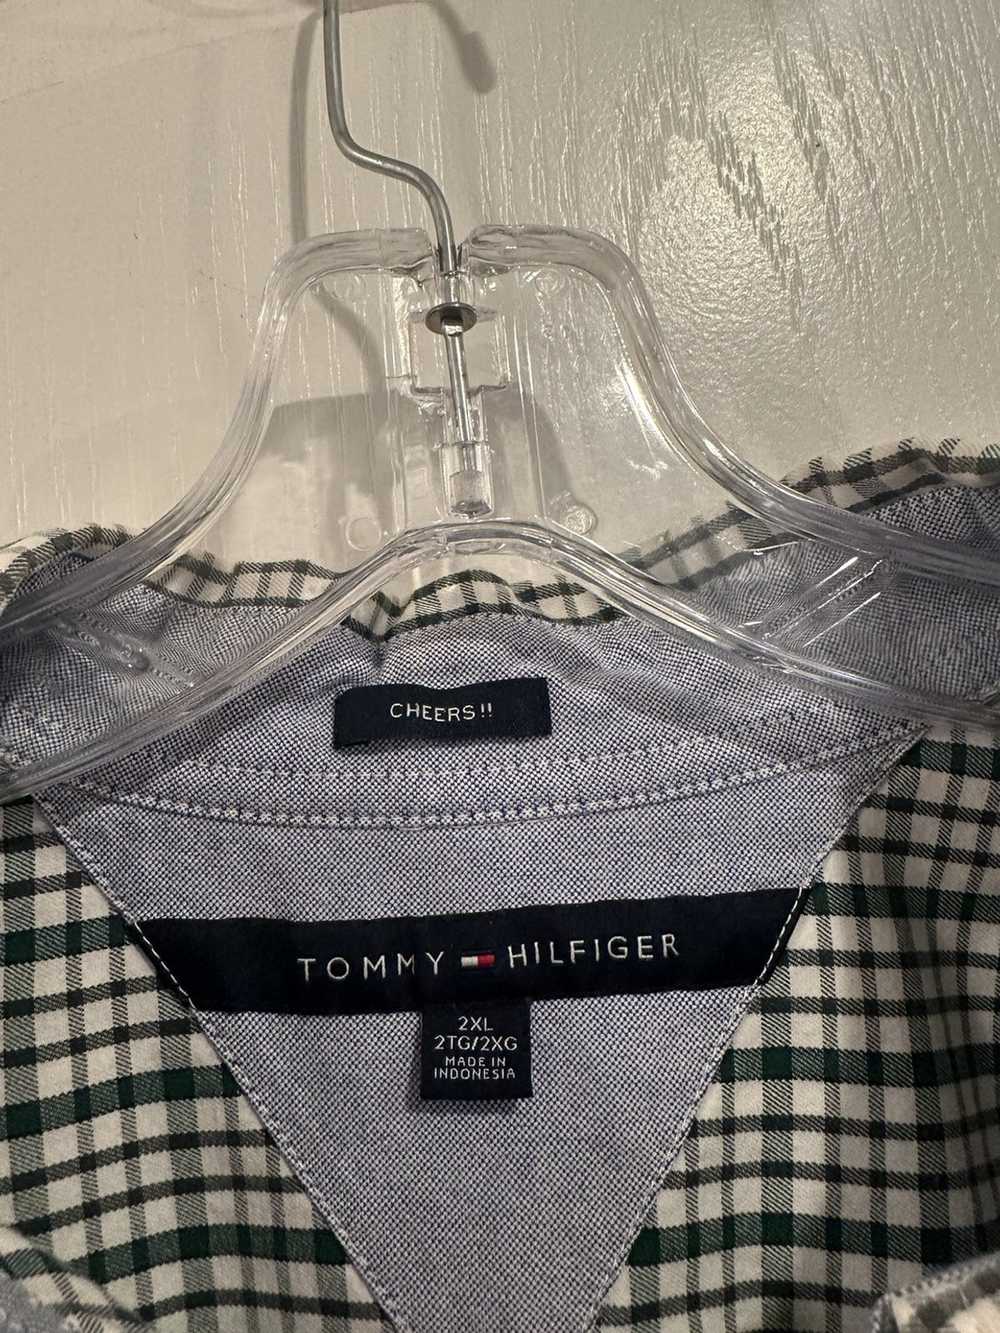 Tommy Hilfiger Tommy Hilfiger men’s Plaid shirt s… - image 2